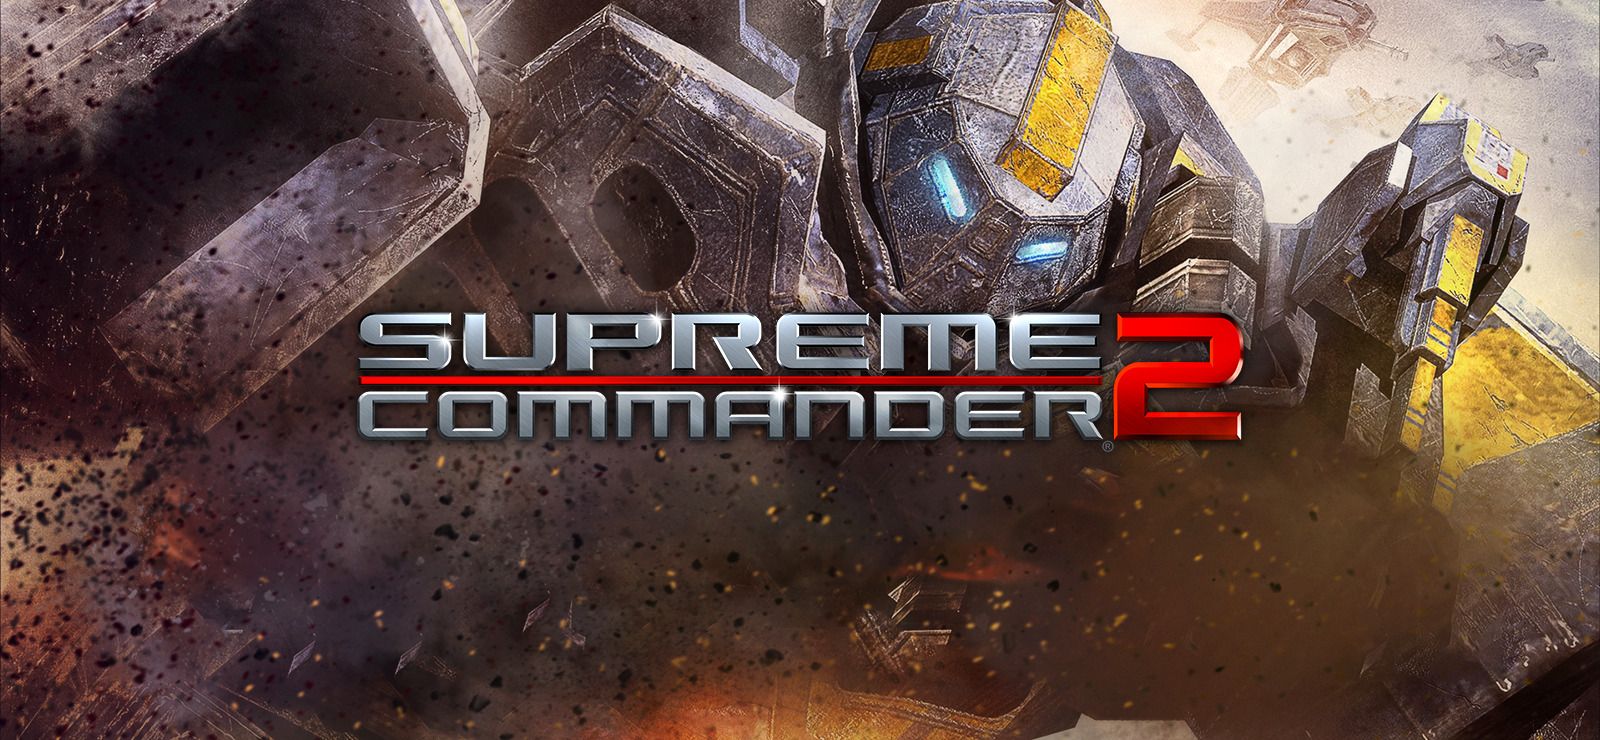 Supreme Commander 2 on GOG.com